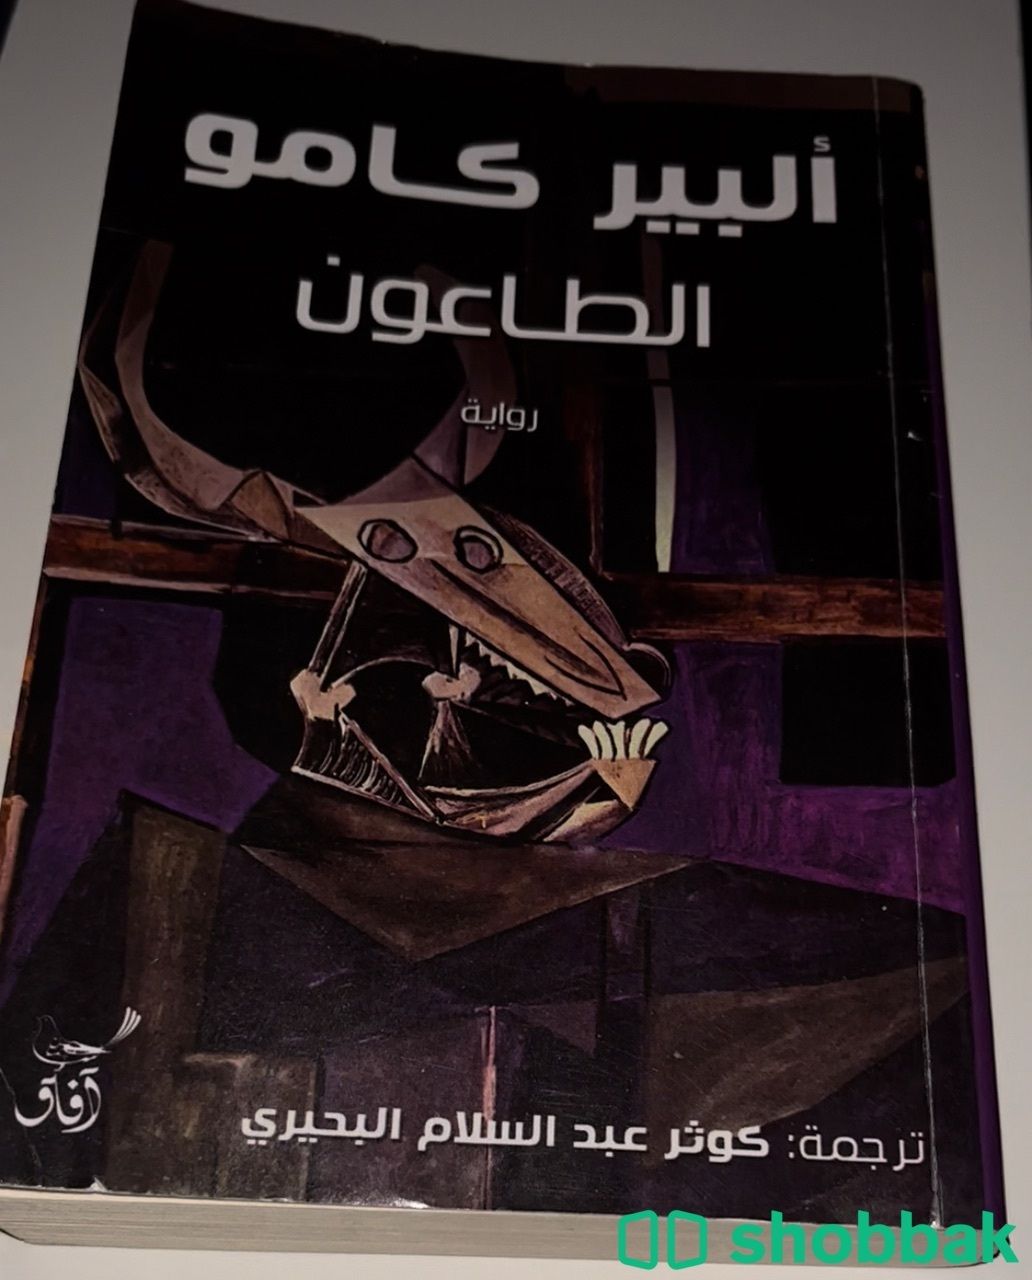 كتاب نظيف للبيع Shobbak Saudi Arabia